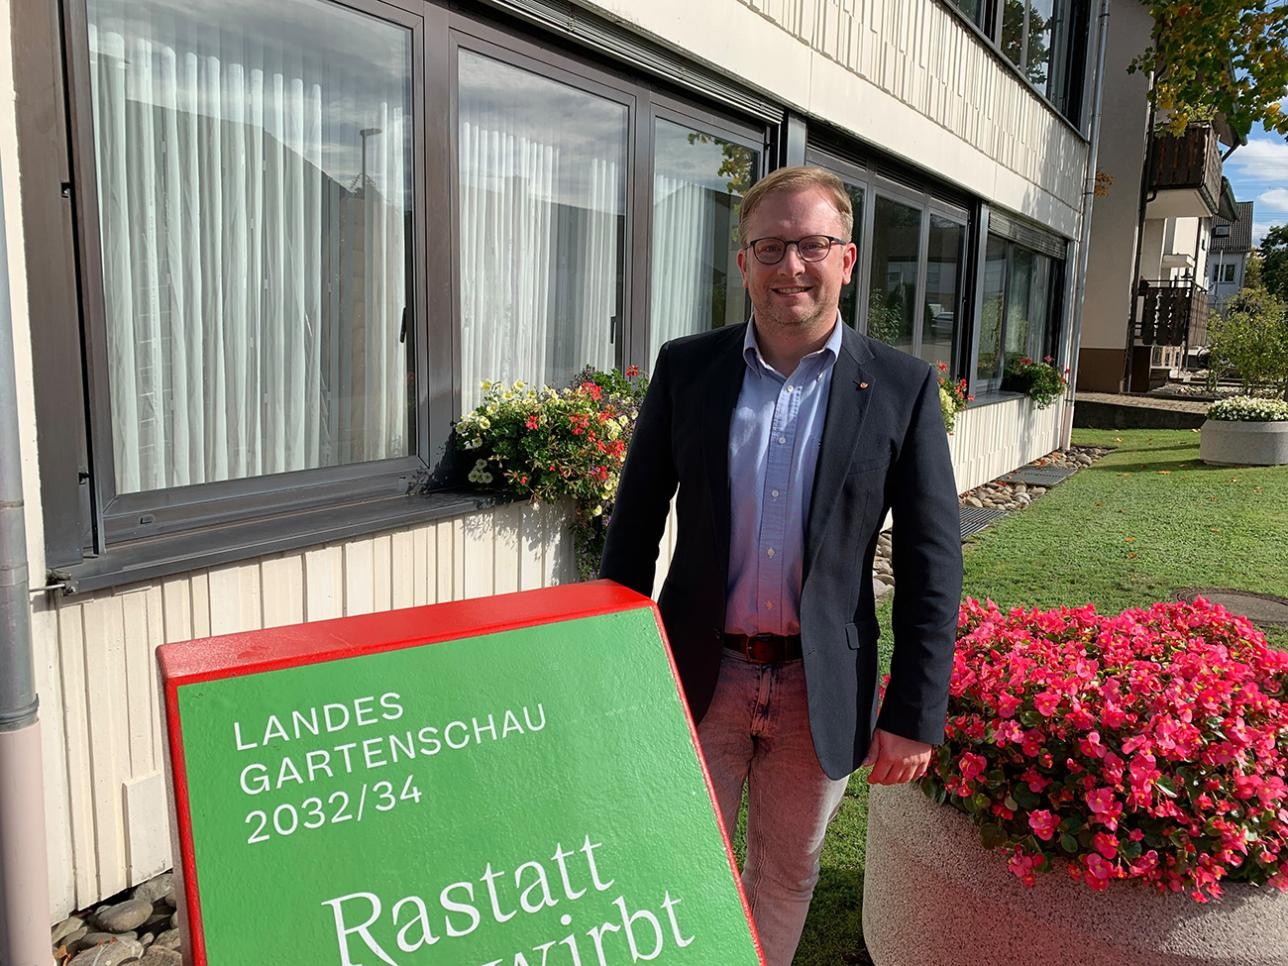 Le chef du village Thorsten Ackermann se tient devant la mairie de Rauental, près de la chaise longue de l'exposition horticole régionale